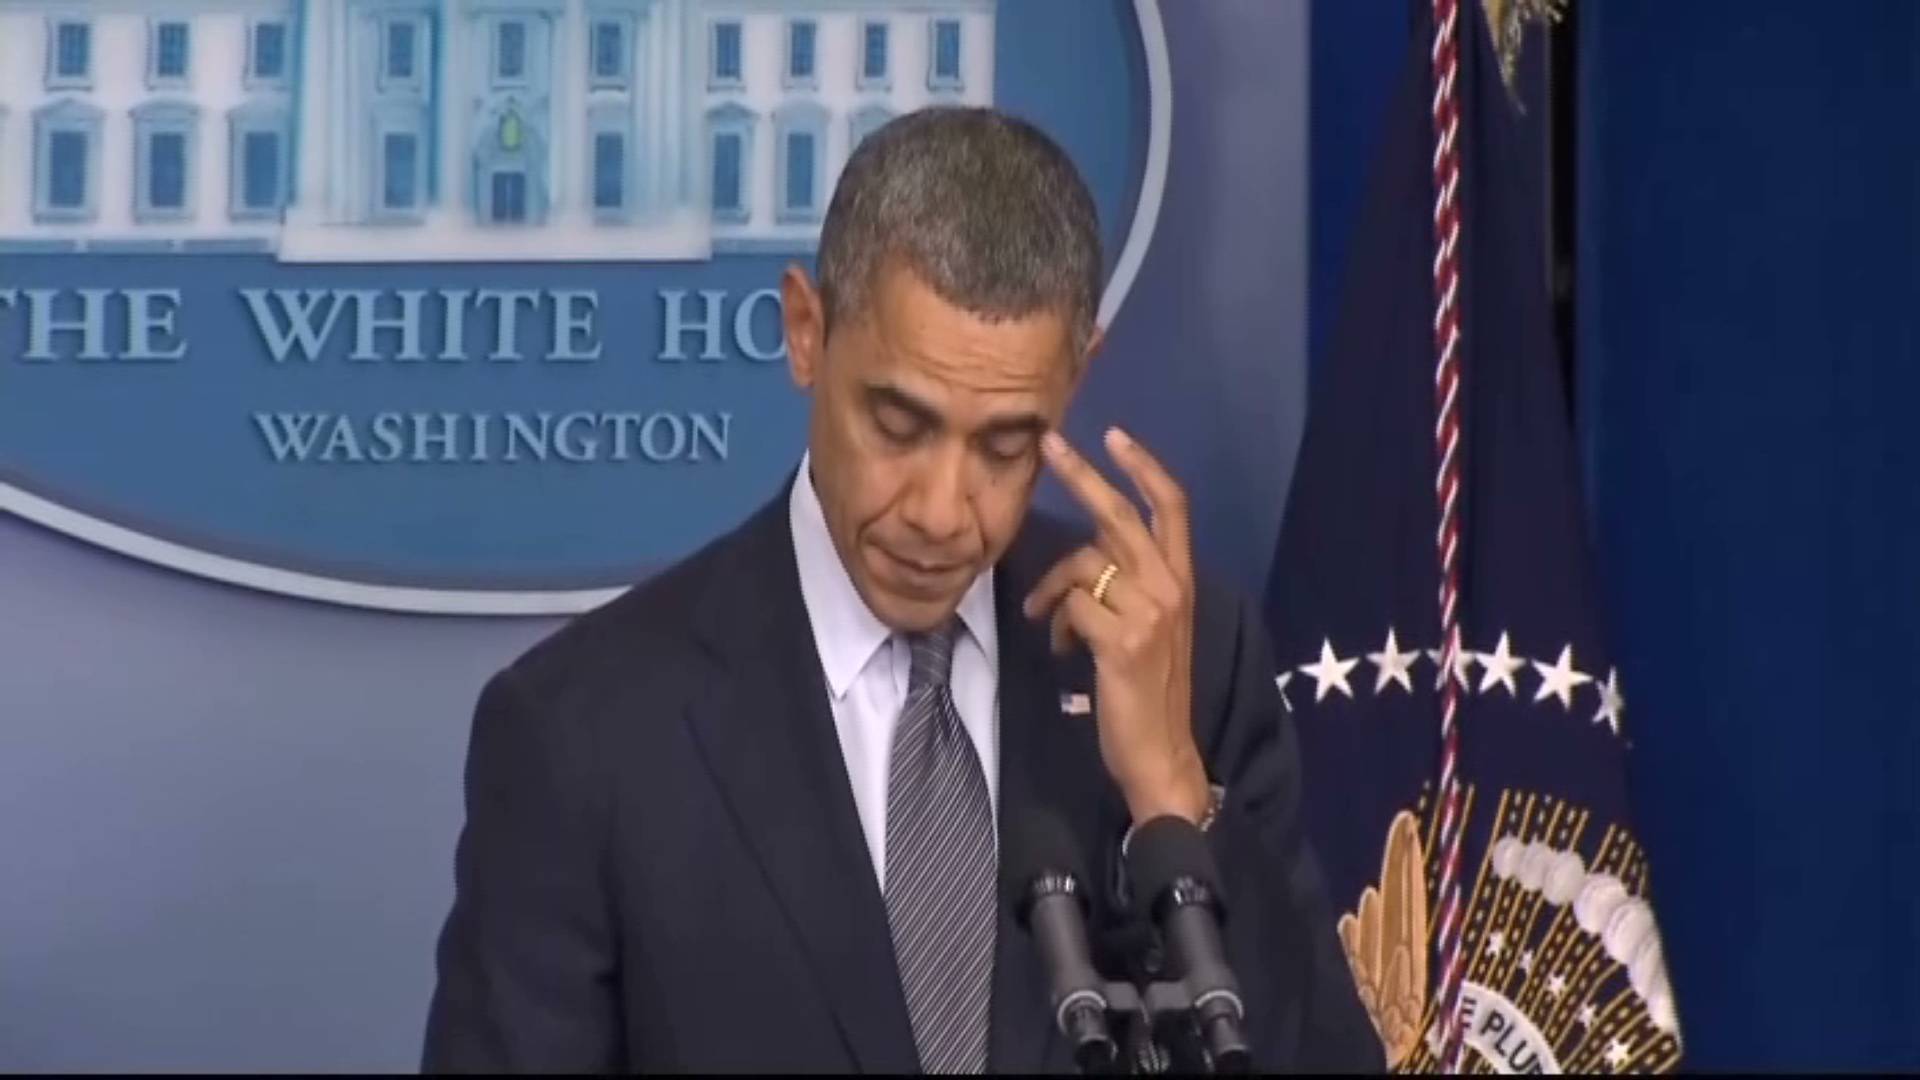 Emotional Obama Speaks on School Shooting